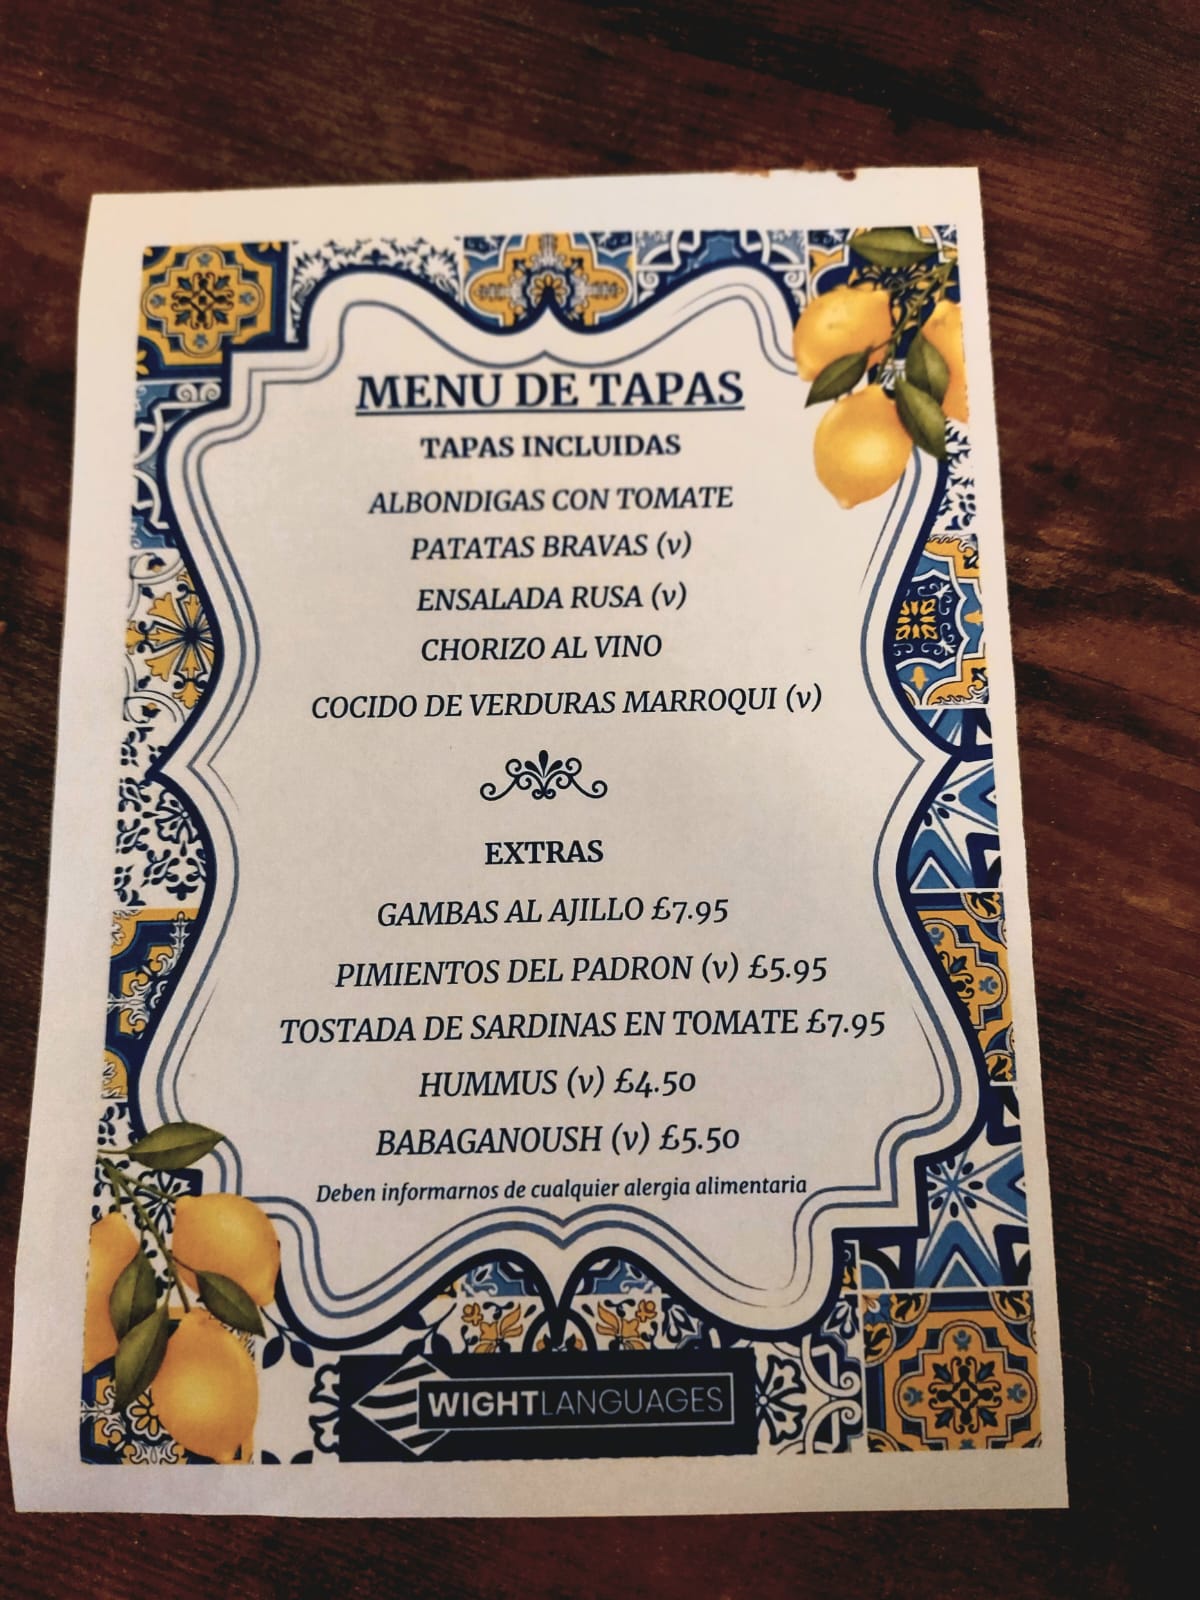 End of term tapas evening menus